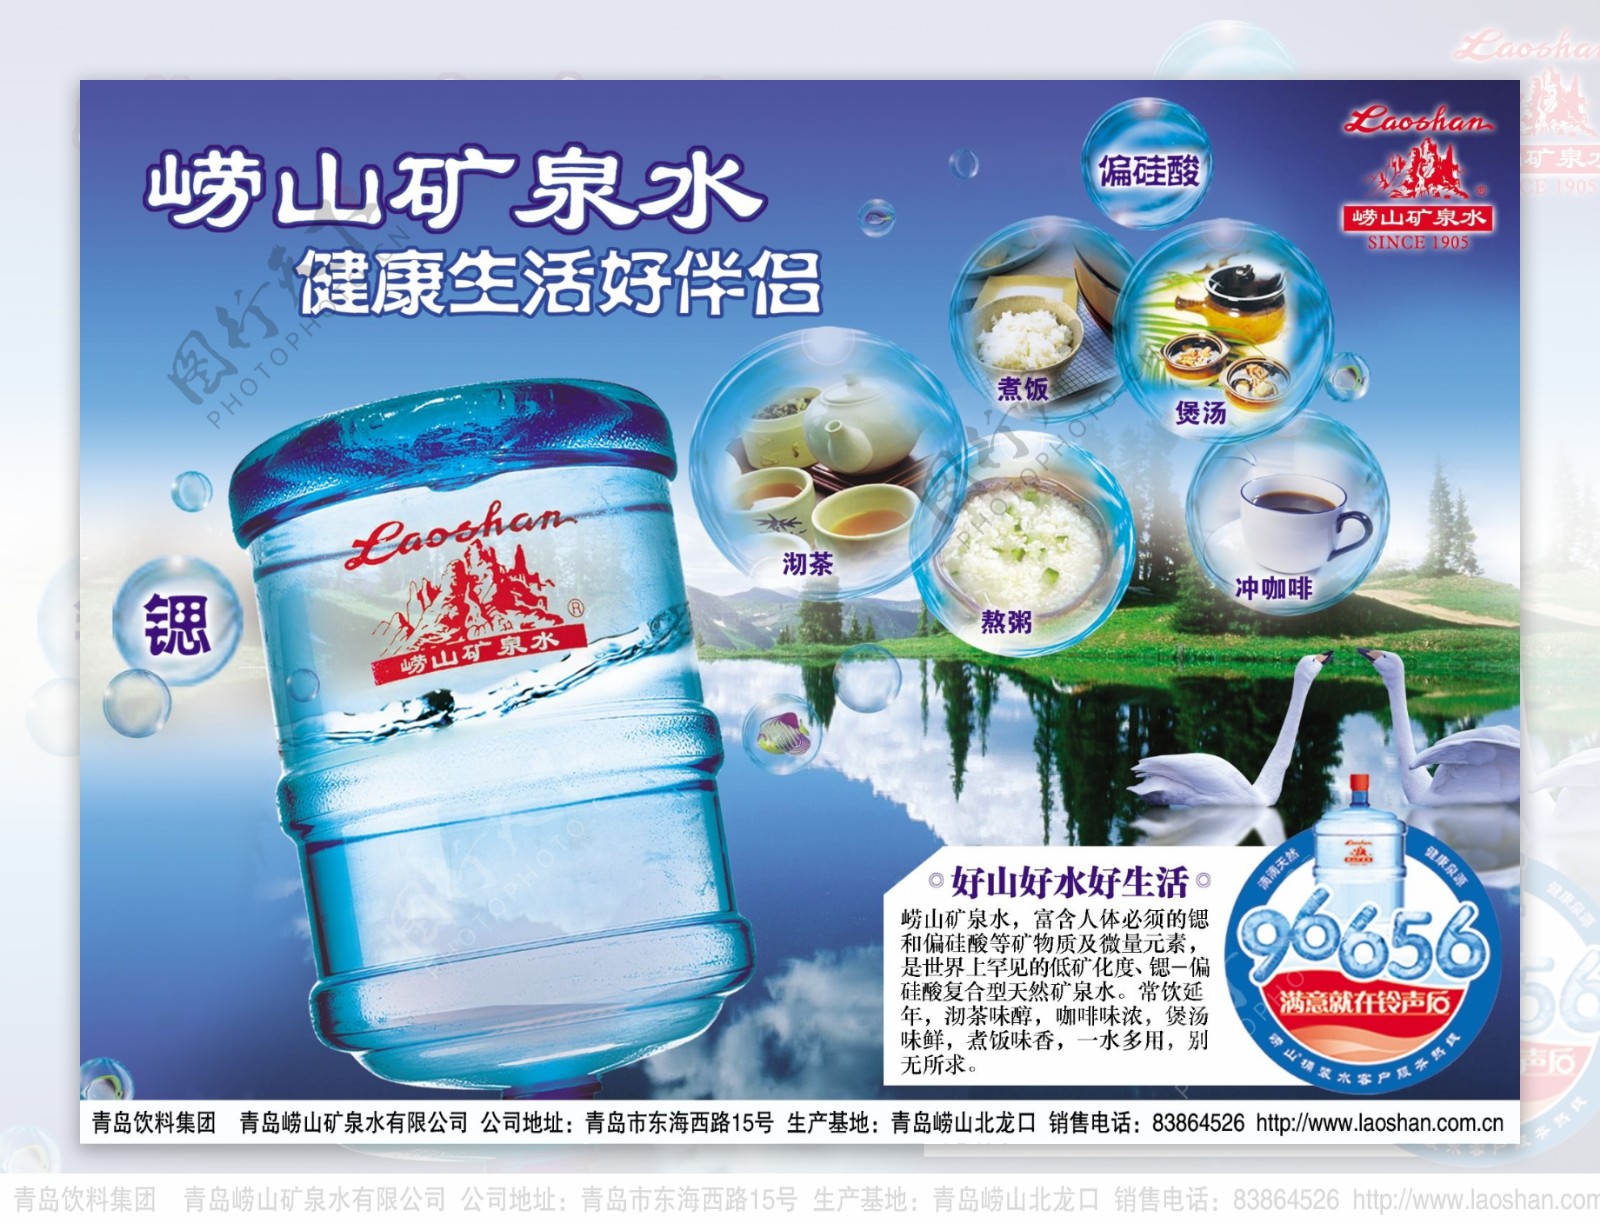 大桶水广告设计